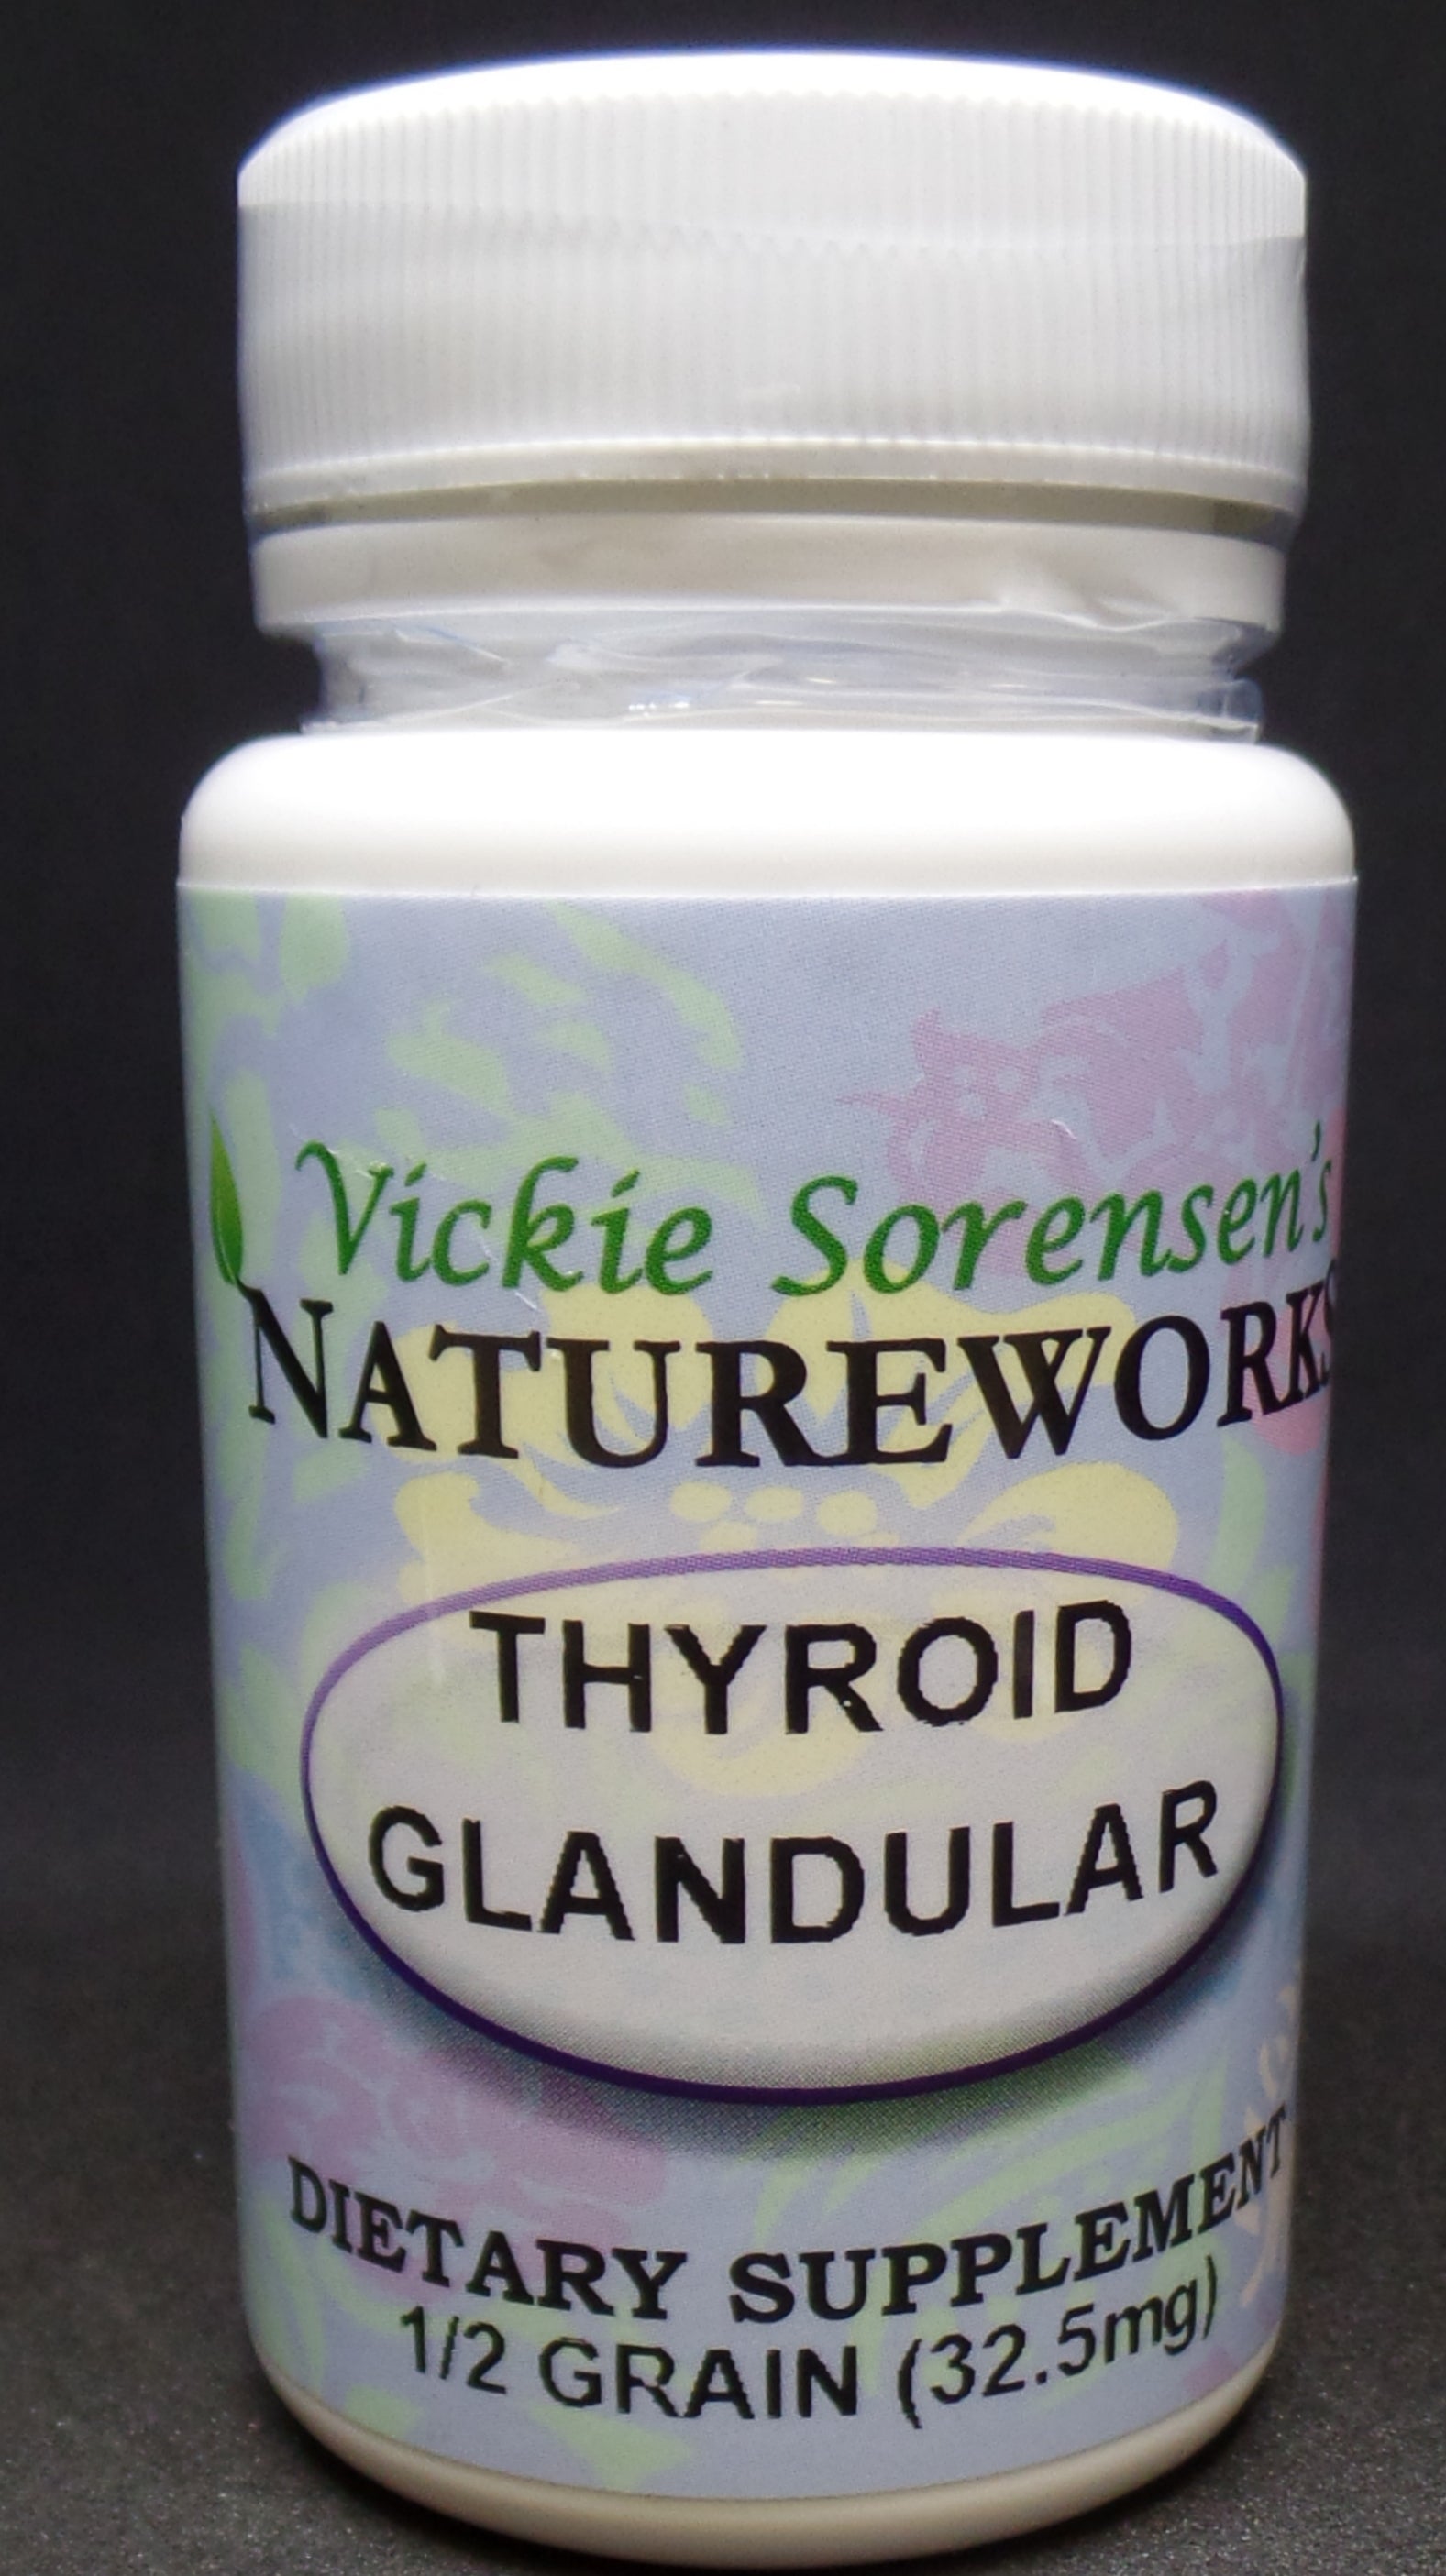 Thyroid Glandular